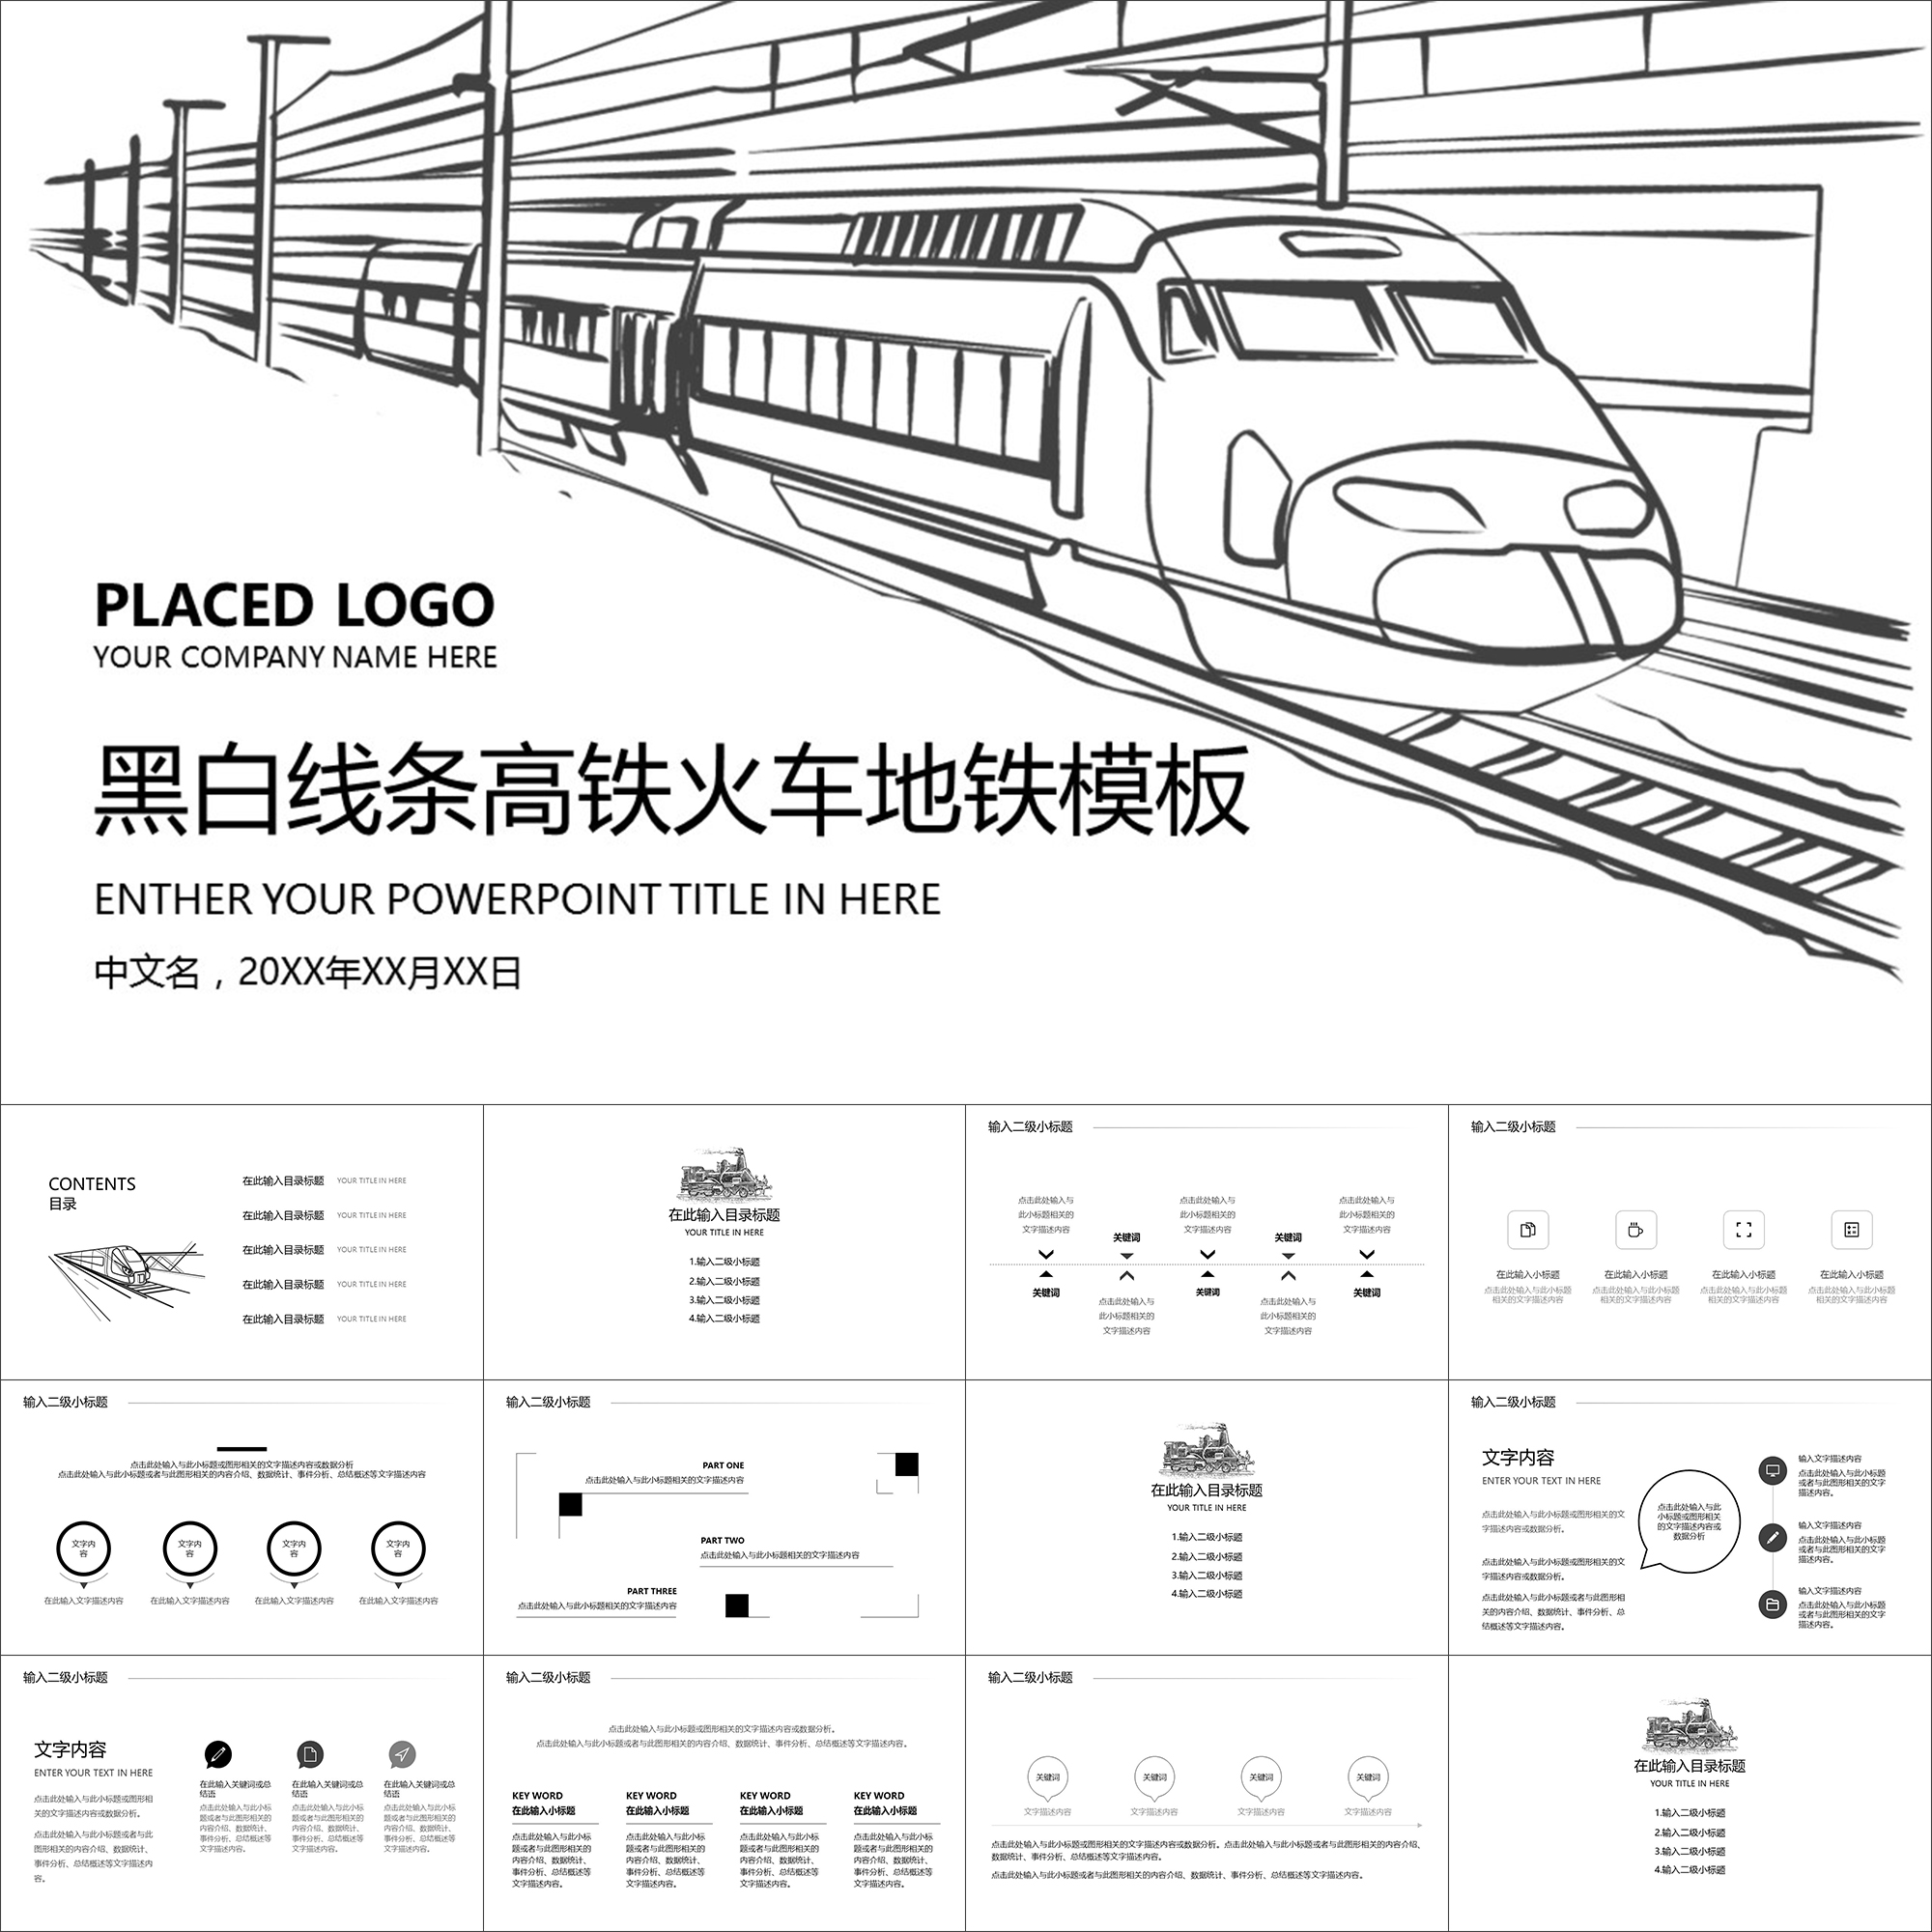 【动态PPT】简洁创意黑白线条高铁火车地铁铁道铁路动画PPT模板